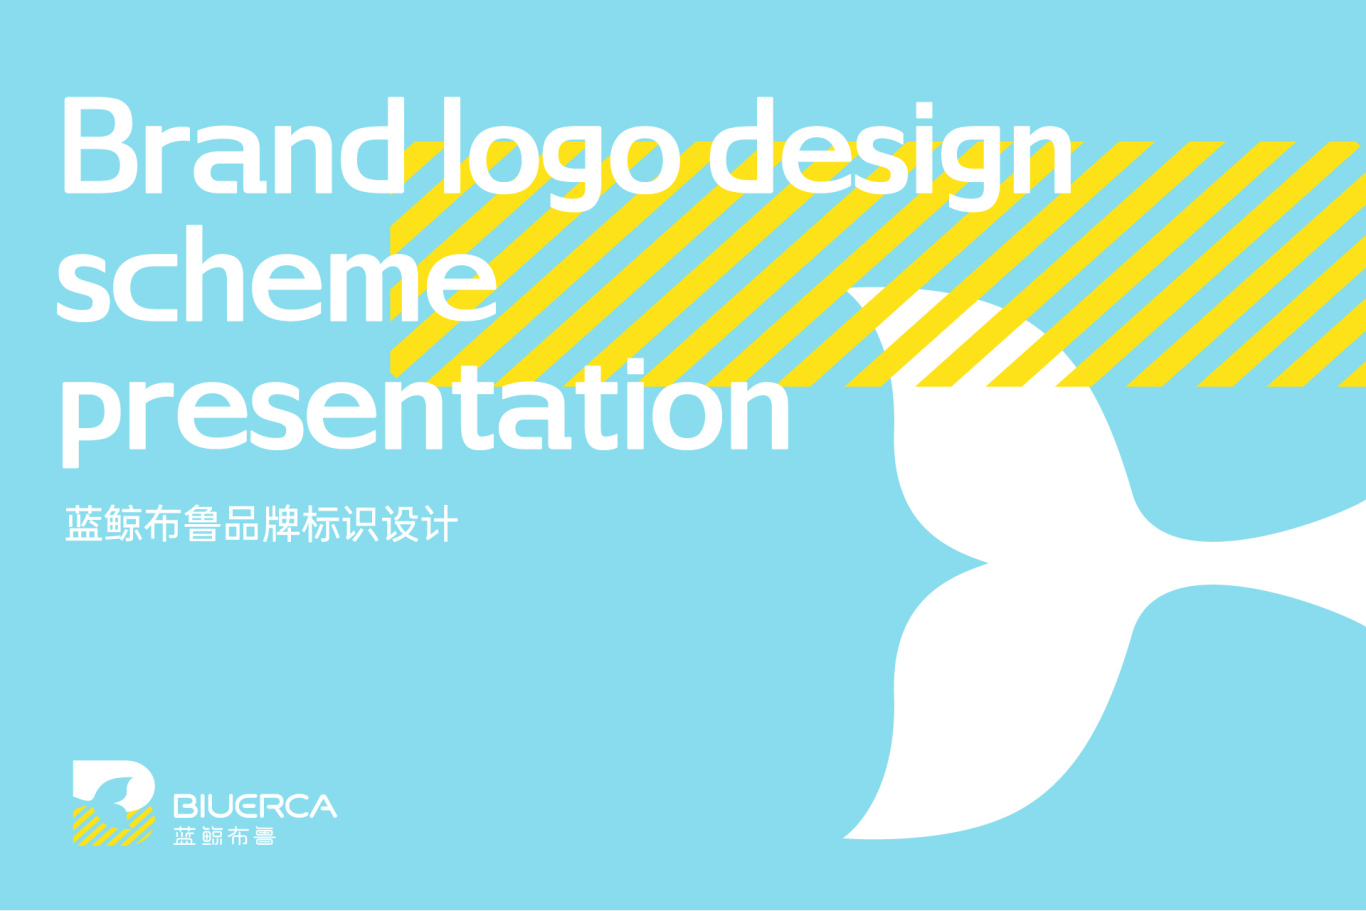 藍鯨布魯教育品牌Logo設計 vi設計圖1